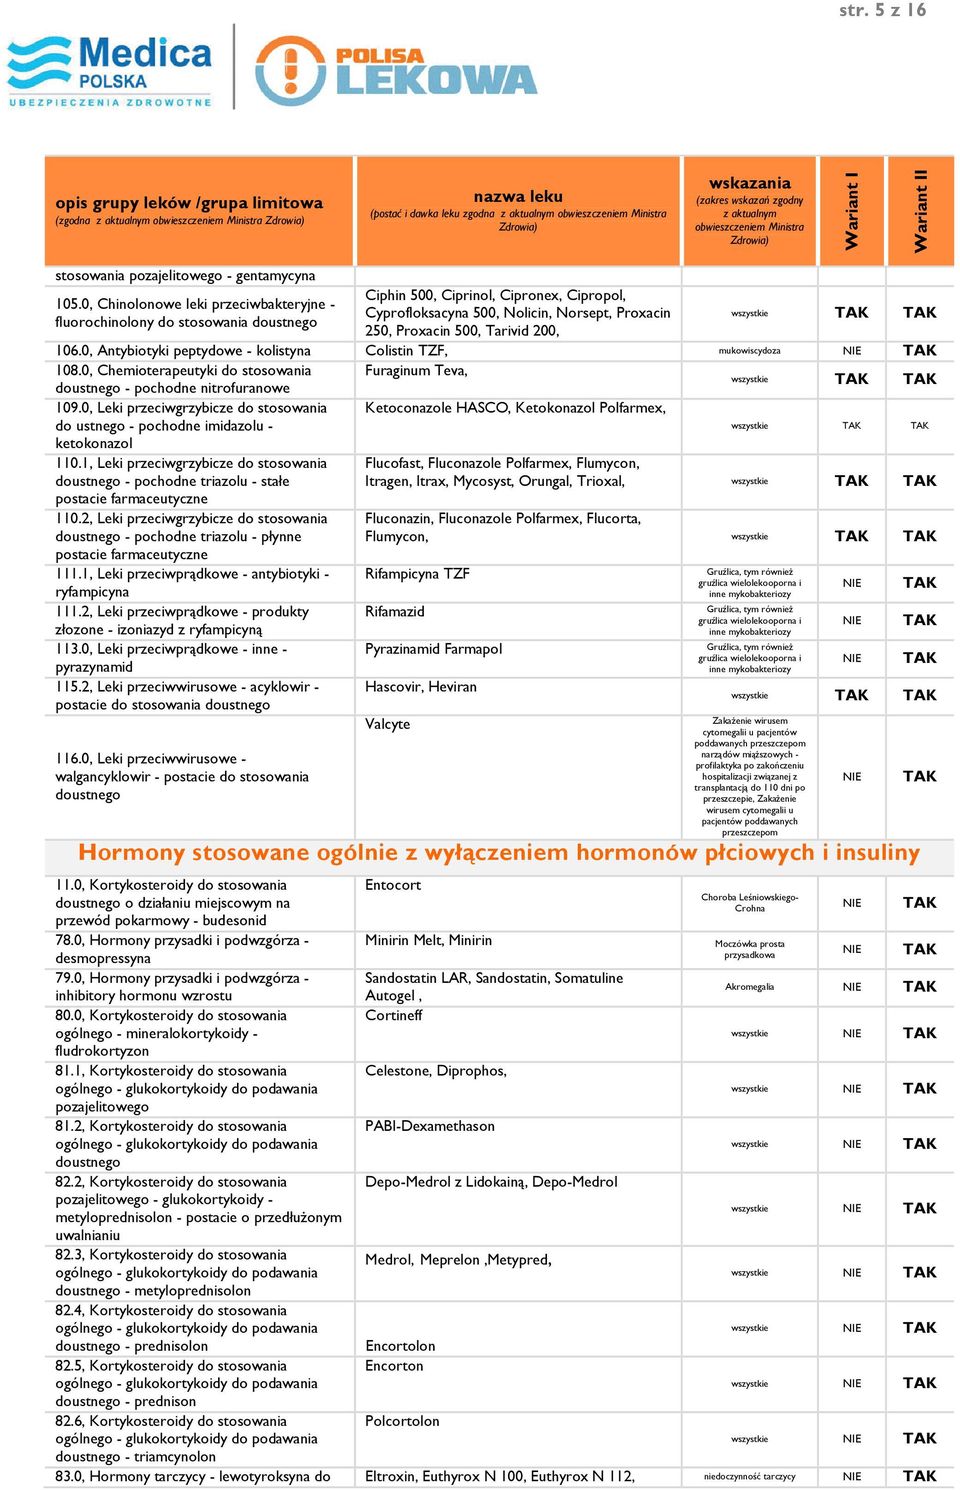 200, wszystkie 106.0, Antybiotyki peptydowe - kolistyna Colistin TZF, mukowiscydoza 108.0, Chemioterapeutyki do stosowania Furaginum Teva, doustnego - pochodne nitrofuranowe wszystkie 109.